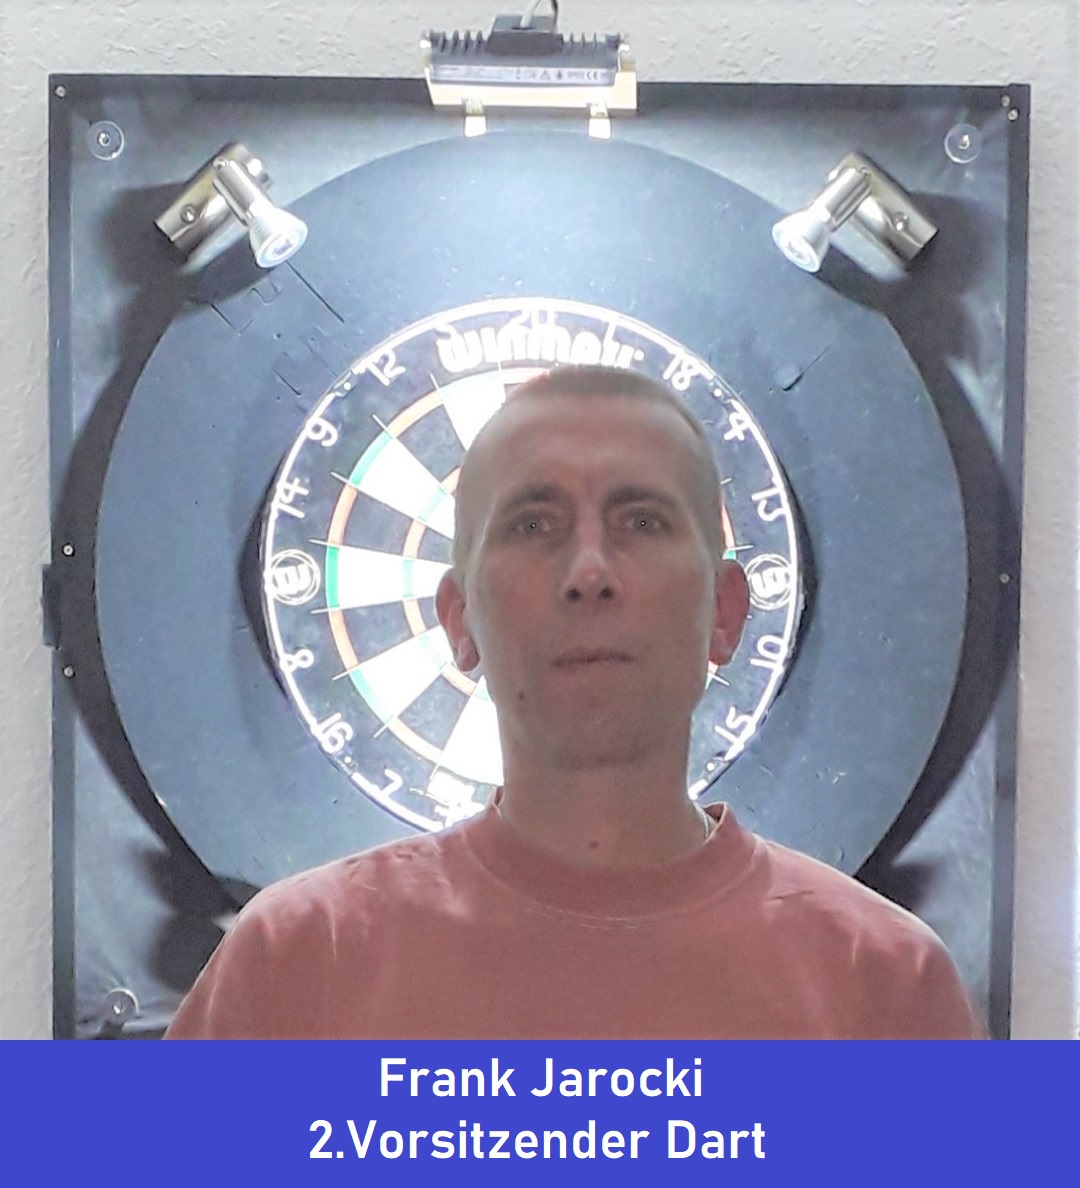 Frank Jarocki